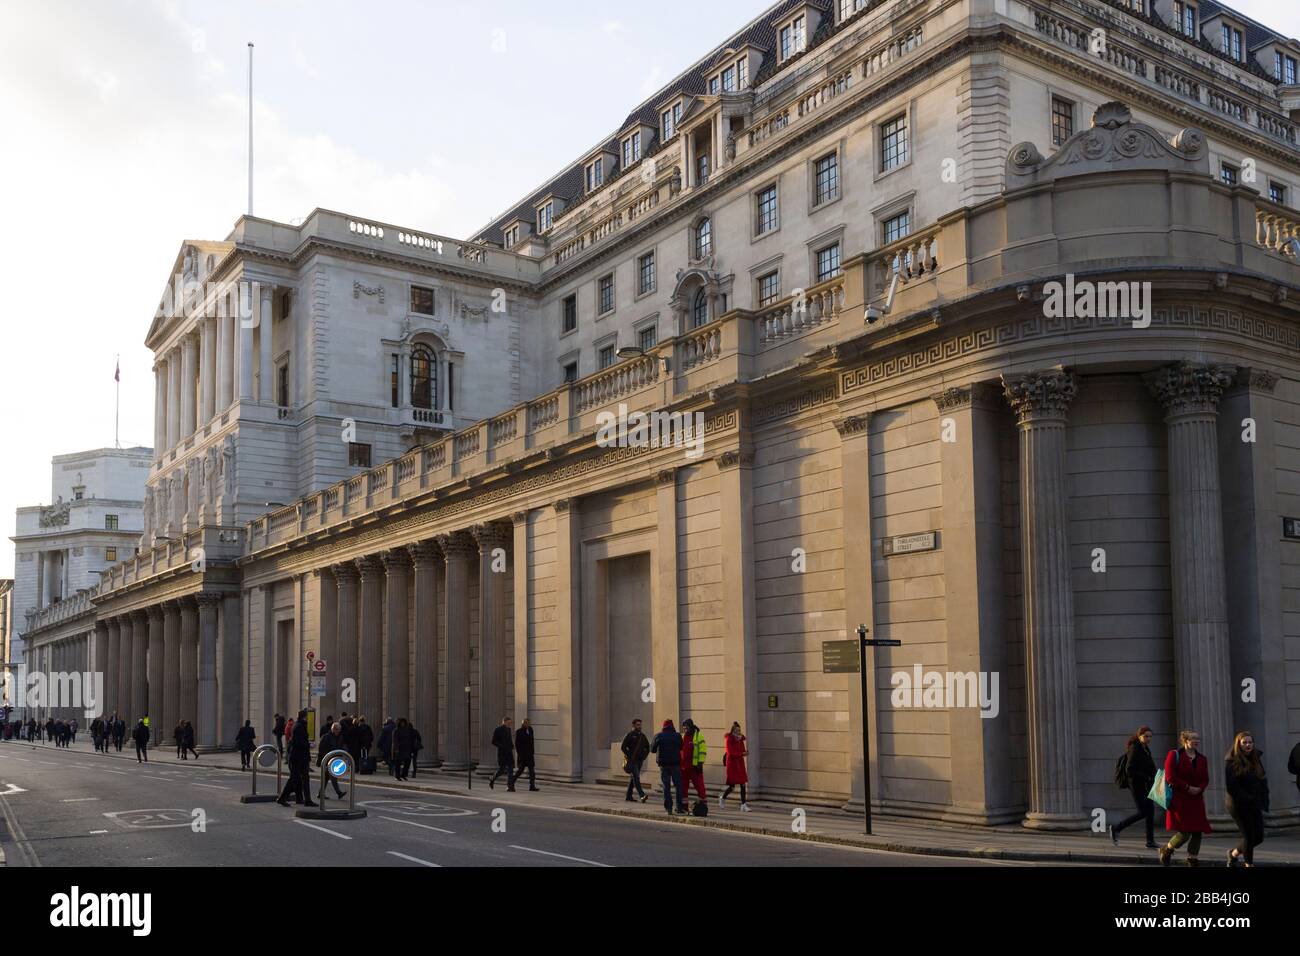 Die Bank of England ist die Zentralbank des Vereinigten Königreichs. Manchmal auch als "Old Lady of Threadneedle Street" bekannt. Threadneedle Street, London, Großbritannien. T Stockfoto